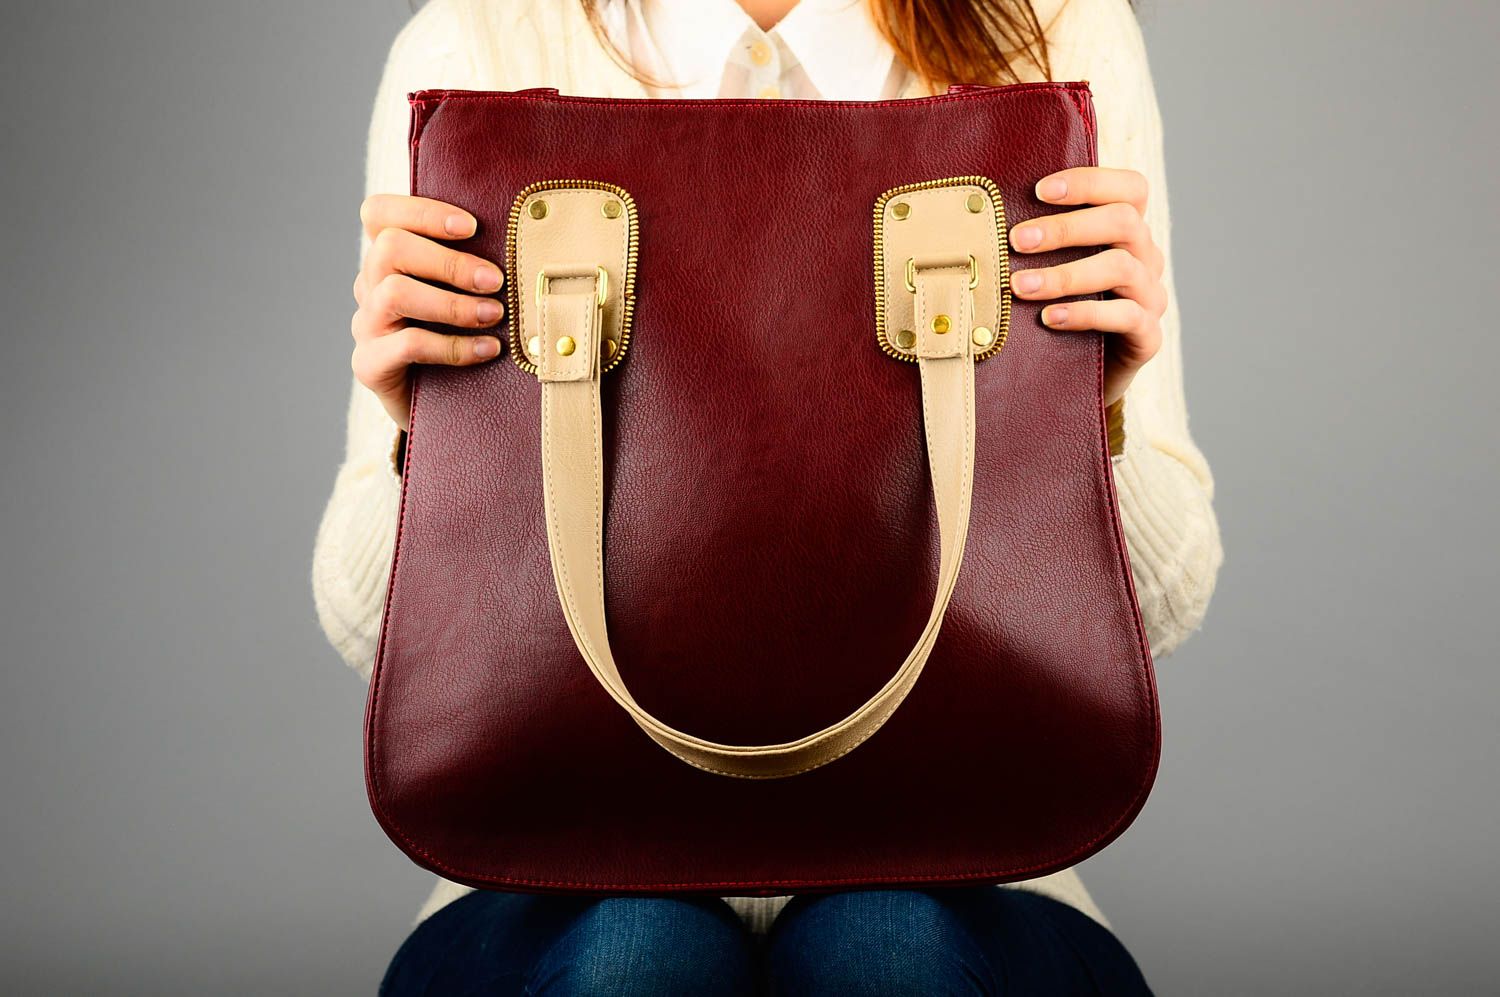 Сумка ручной работы сумка на плечо из кожзама женская сумка бордовая стильная фото 2